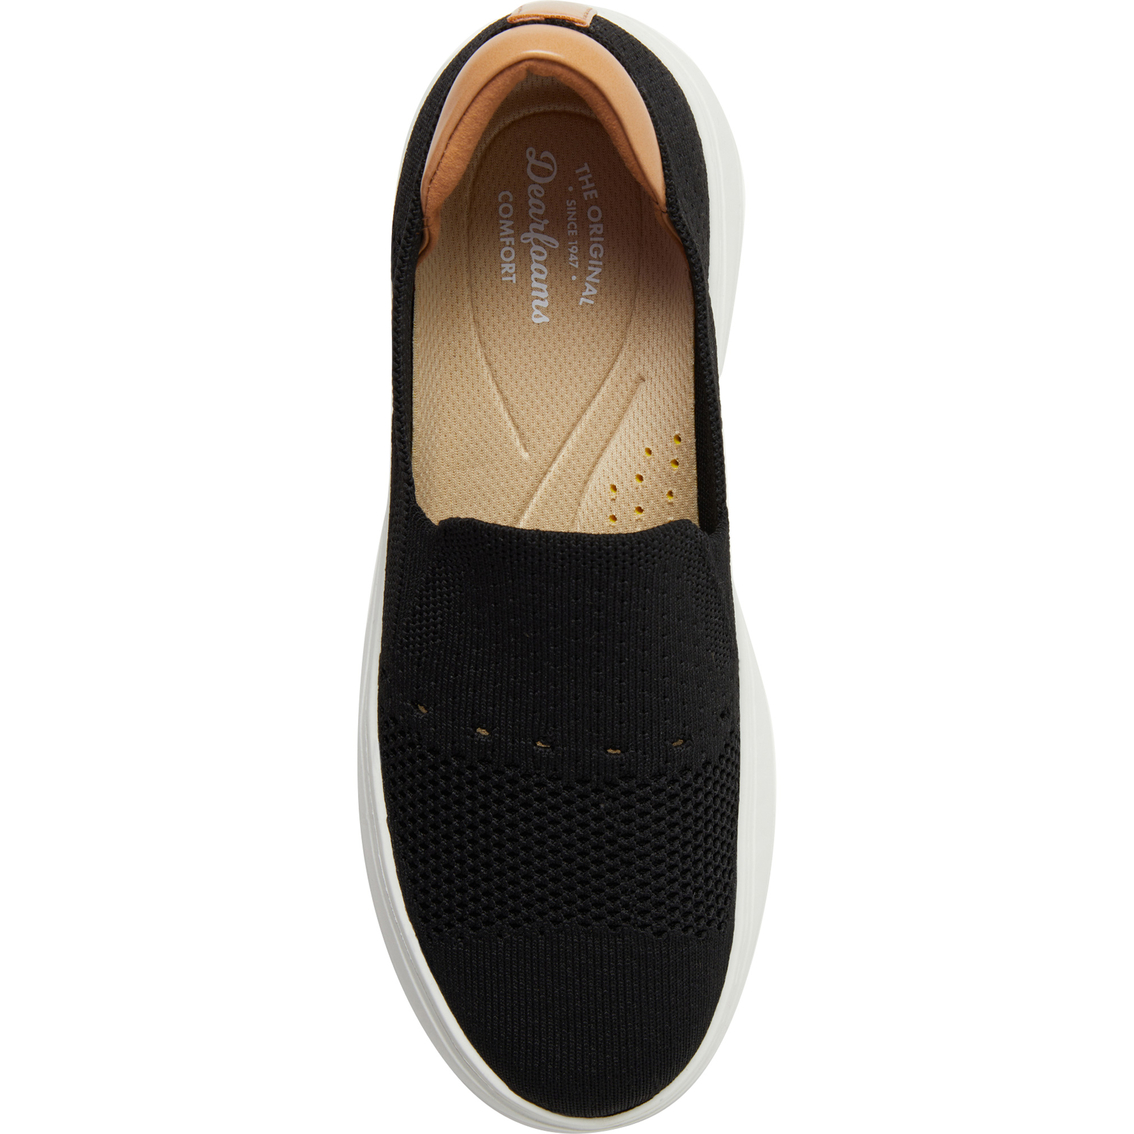 Original Comfort by Dearfoams Women's Sophie Slip On Sneakers - Image 3 of 4